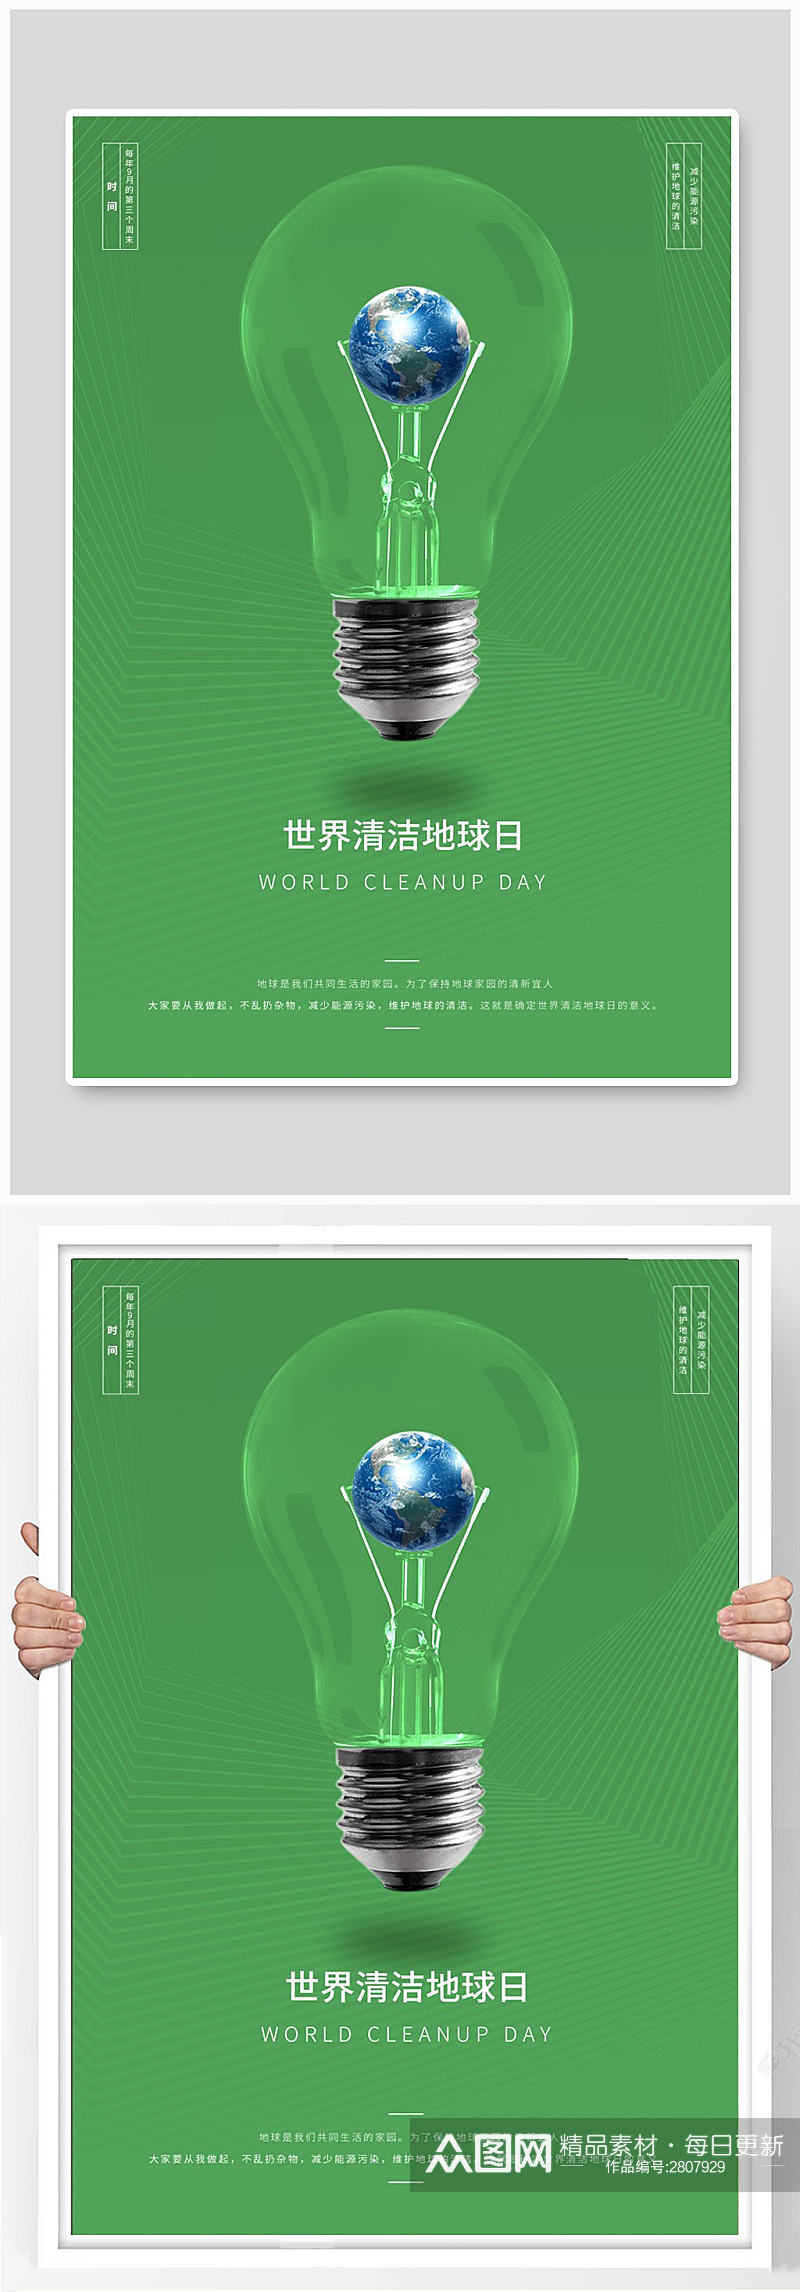 绿色环保高端简约大气世界地球清洁日海报素材